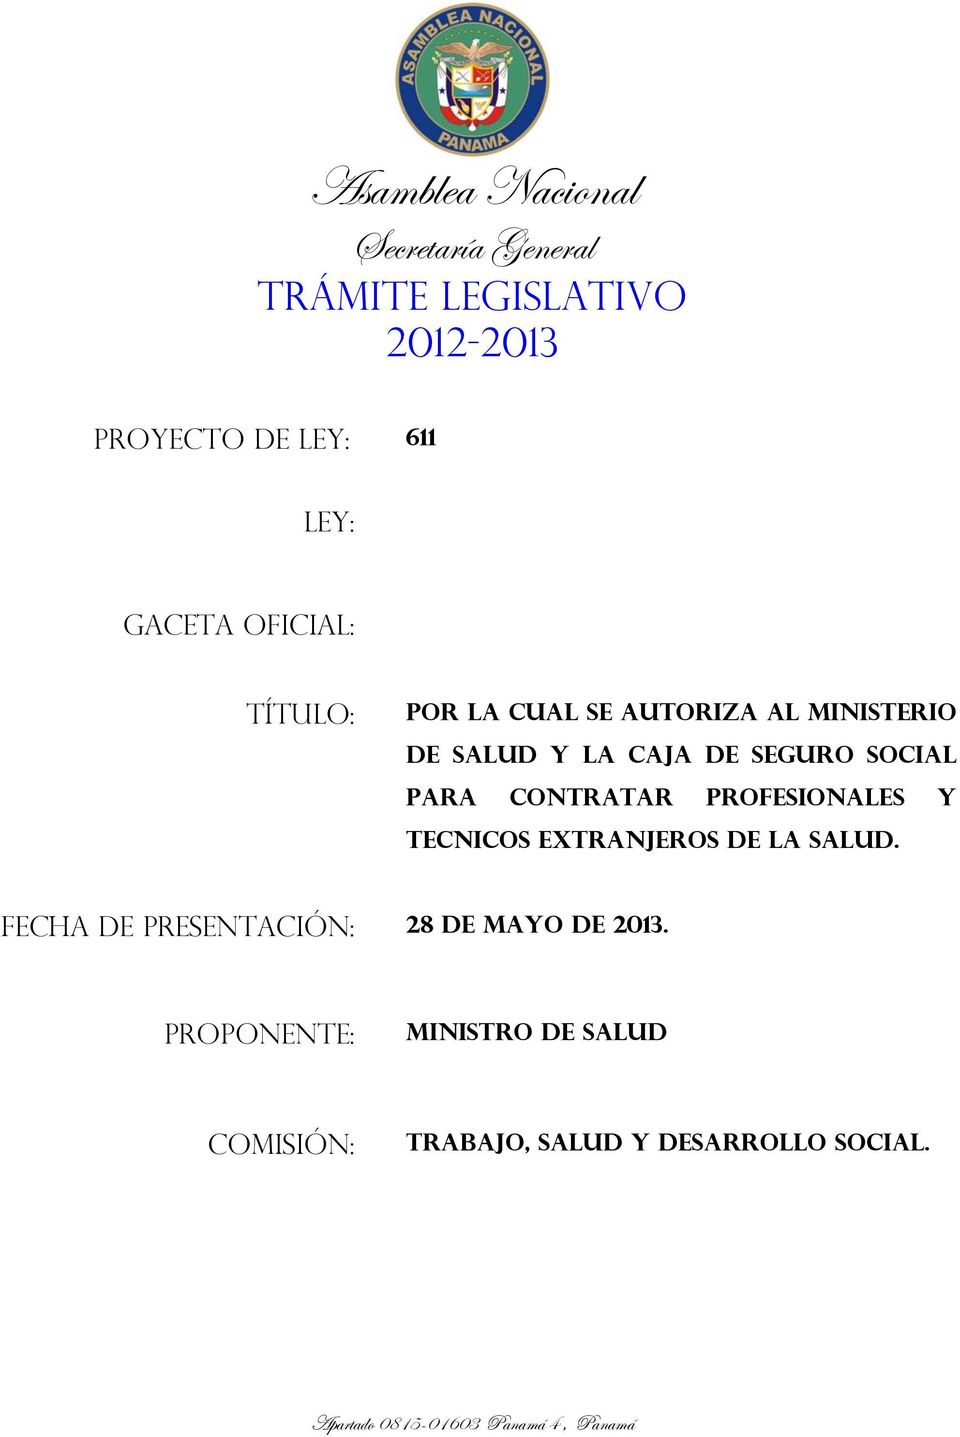 CONTRATAR PROFESIONALES Y TECNICOS EXTRANJEROS DE LA SALUD. FECHA DE PRESENTACIÓN: 28 DE MAYO DE 2013.